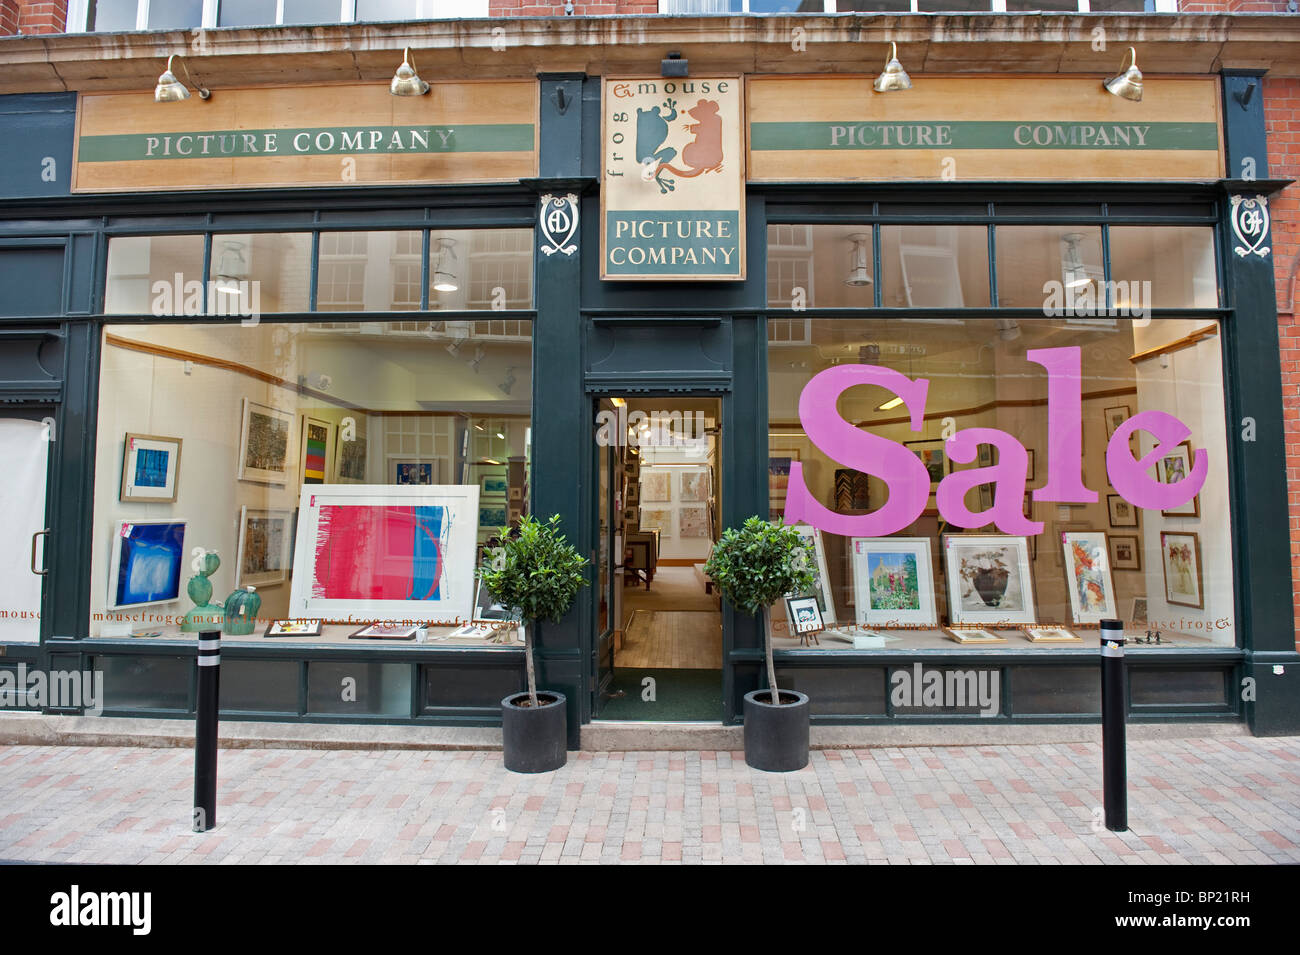 La rana & Mouse Picture corniciai negozio di fronte a Leicester City. Vendita rosa segno nella finestra Foto Stock